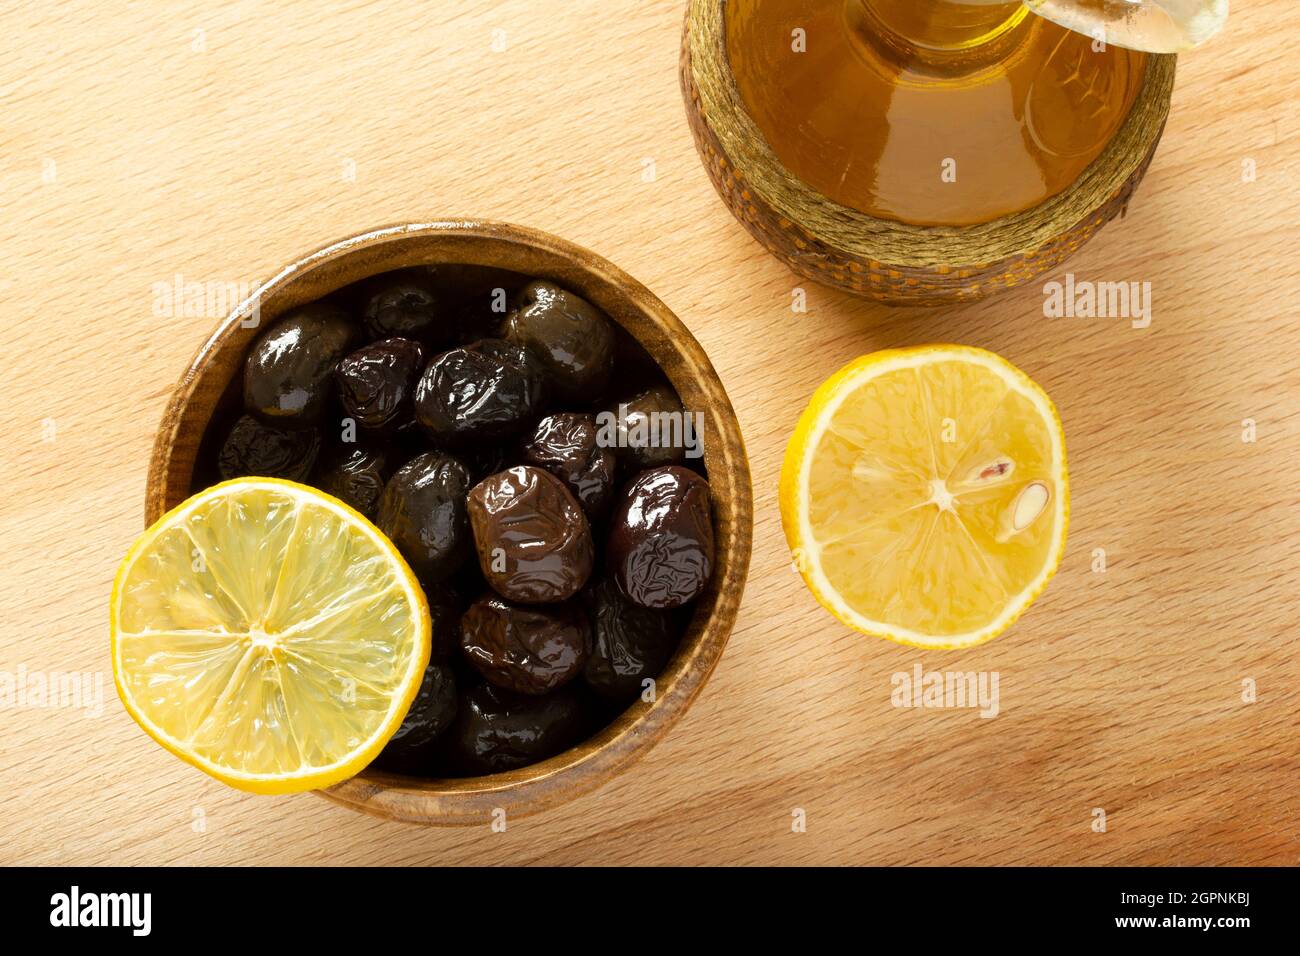 Une assiette d'olives et une tranche de citron. Huile d'olive biologique. Banque D'Images